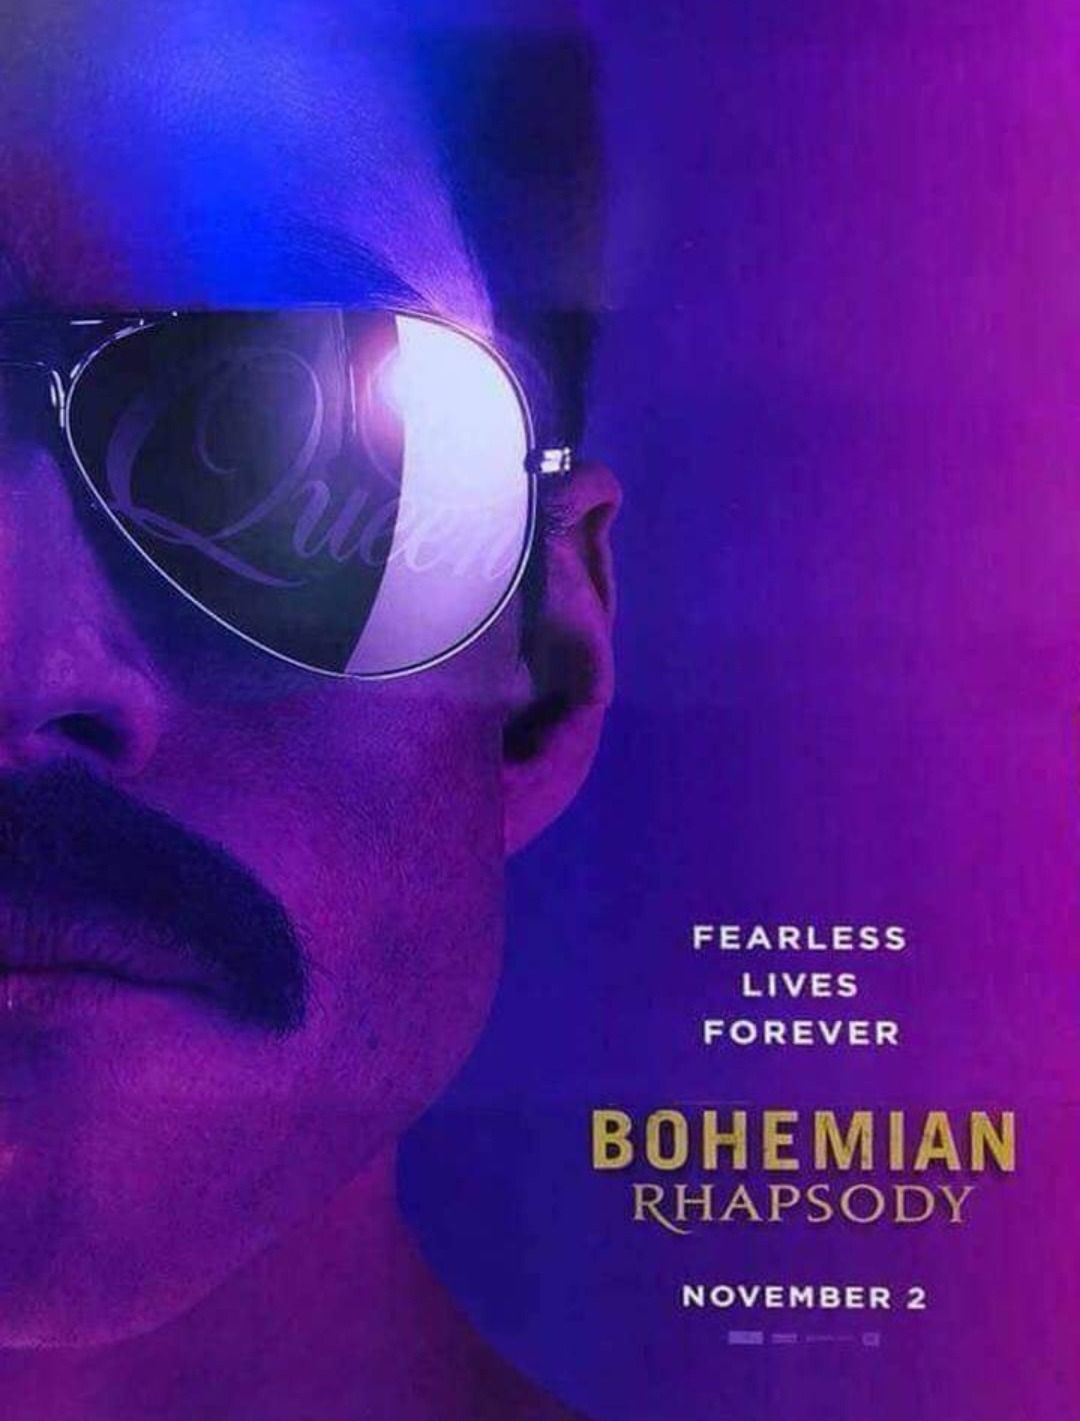 Bohemian Rhapsody 2018 Movie Fan Poster Wallpapers